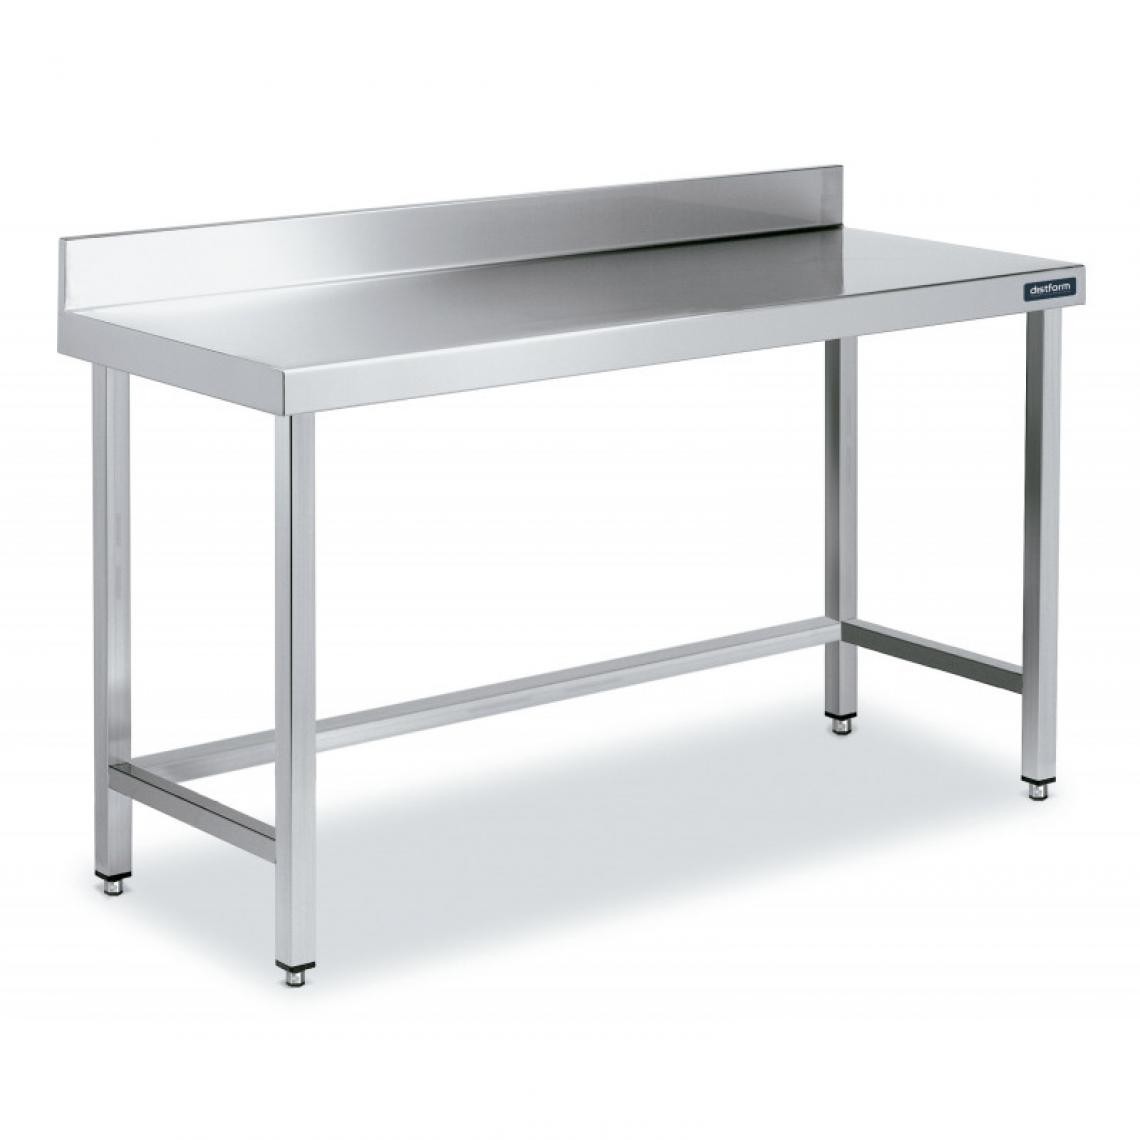 DISTFORM - Table Inox de Travail avec Dosseret Gamme 900 - Distform - Acier inoxydable700x900 - Tables à manger